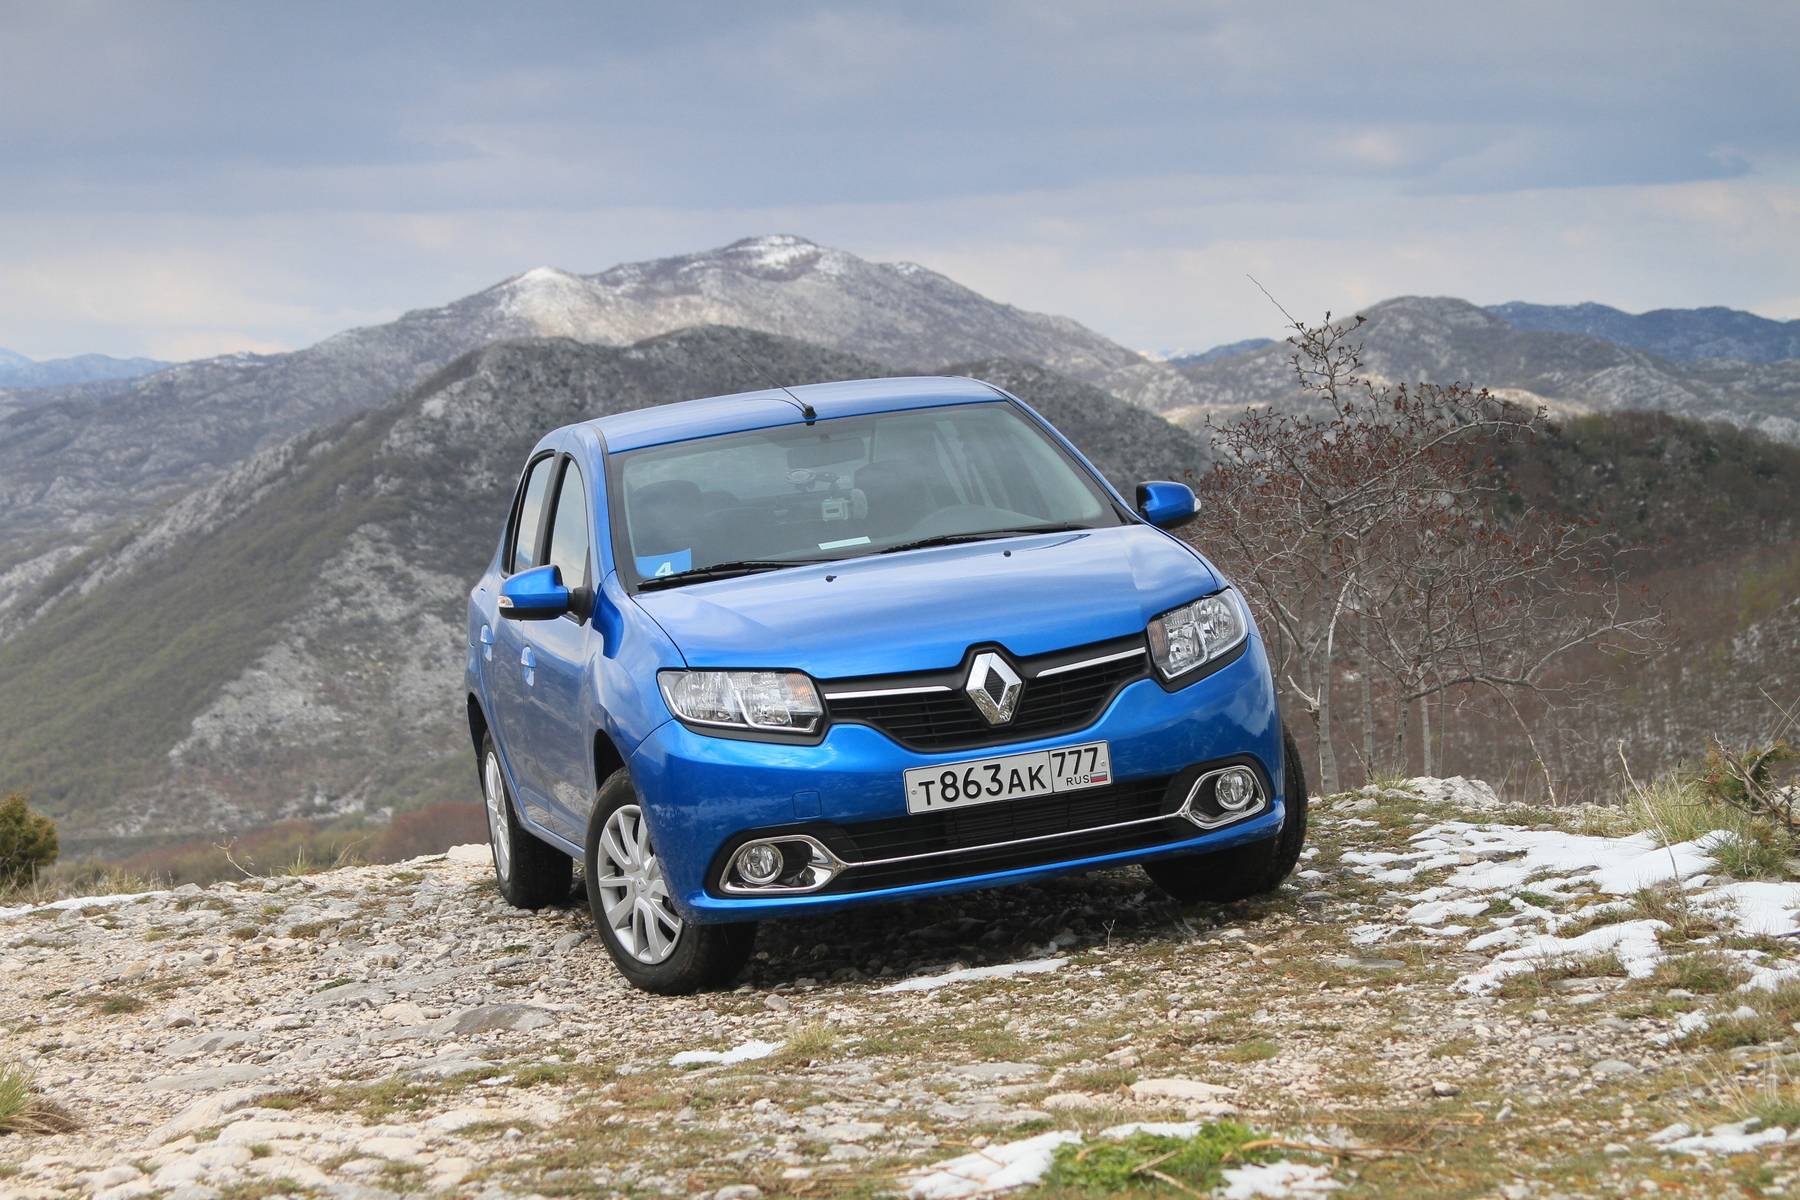 Renault logan 2014 - обзор и фото нового поколения народной машины